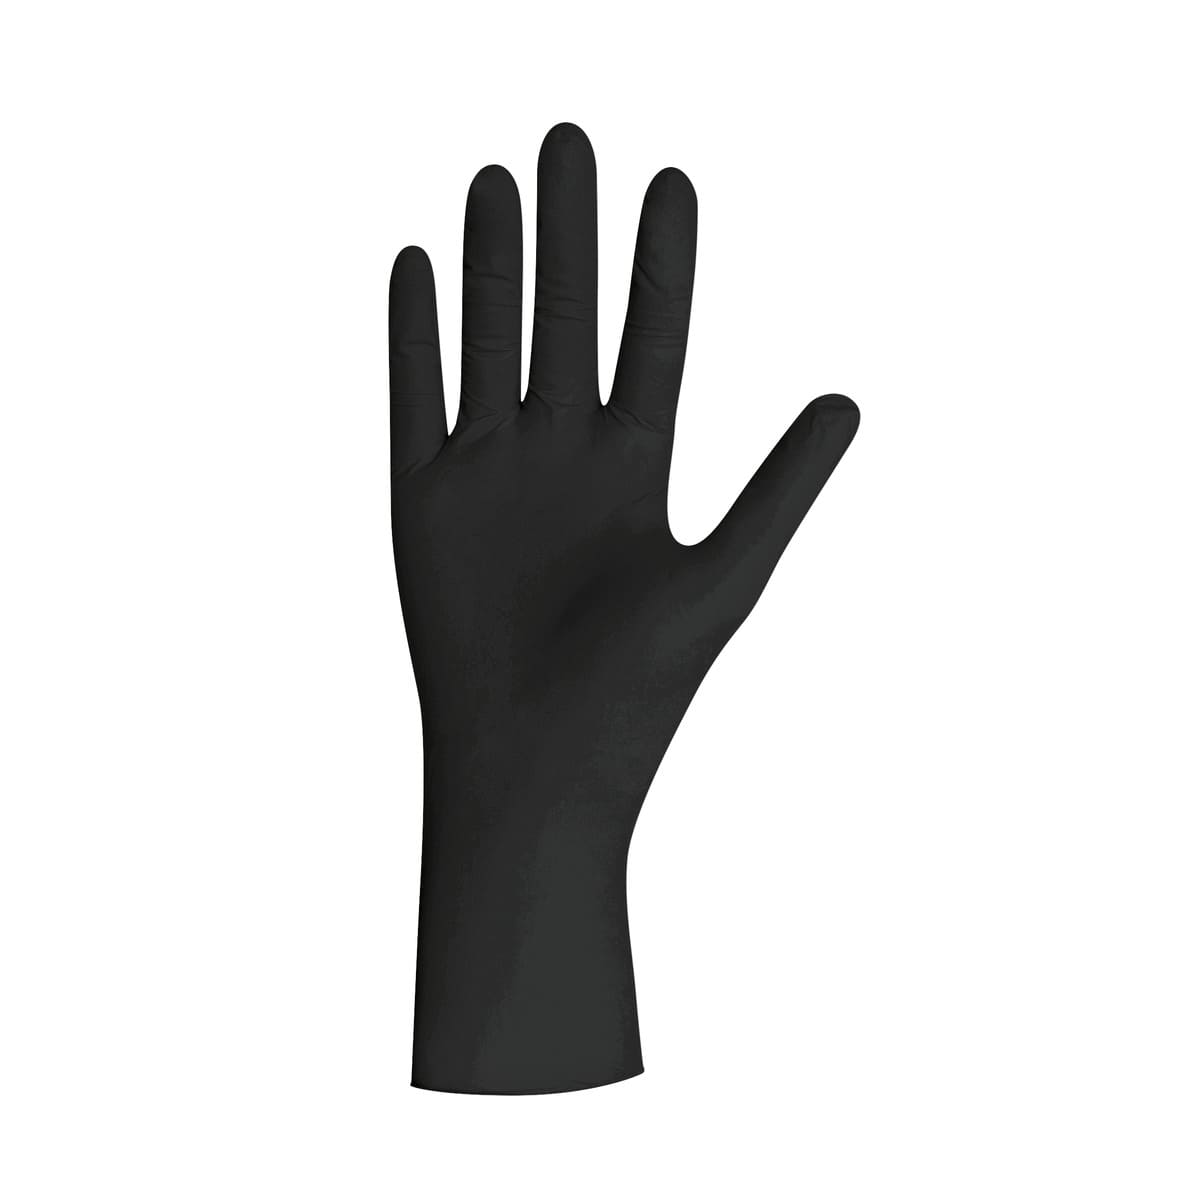 UNIGLOVES Black Pearl, Handschuhe aus Nitril in schwarz